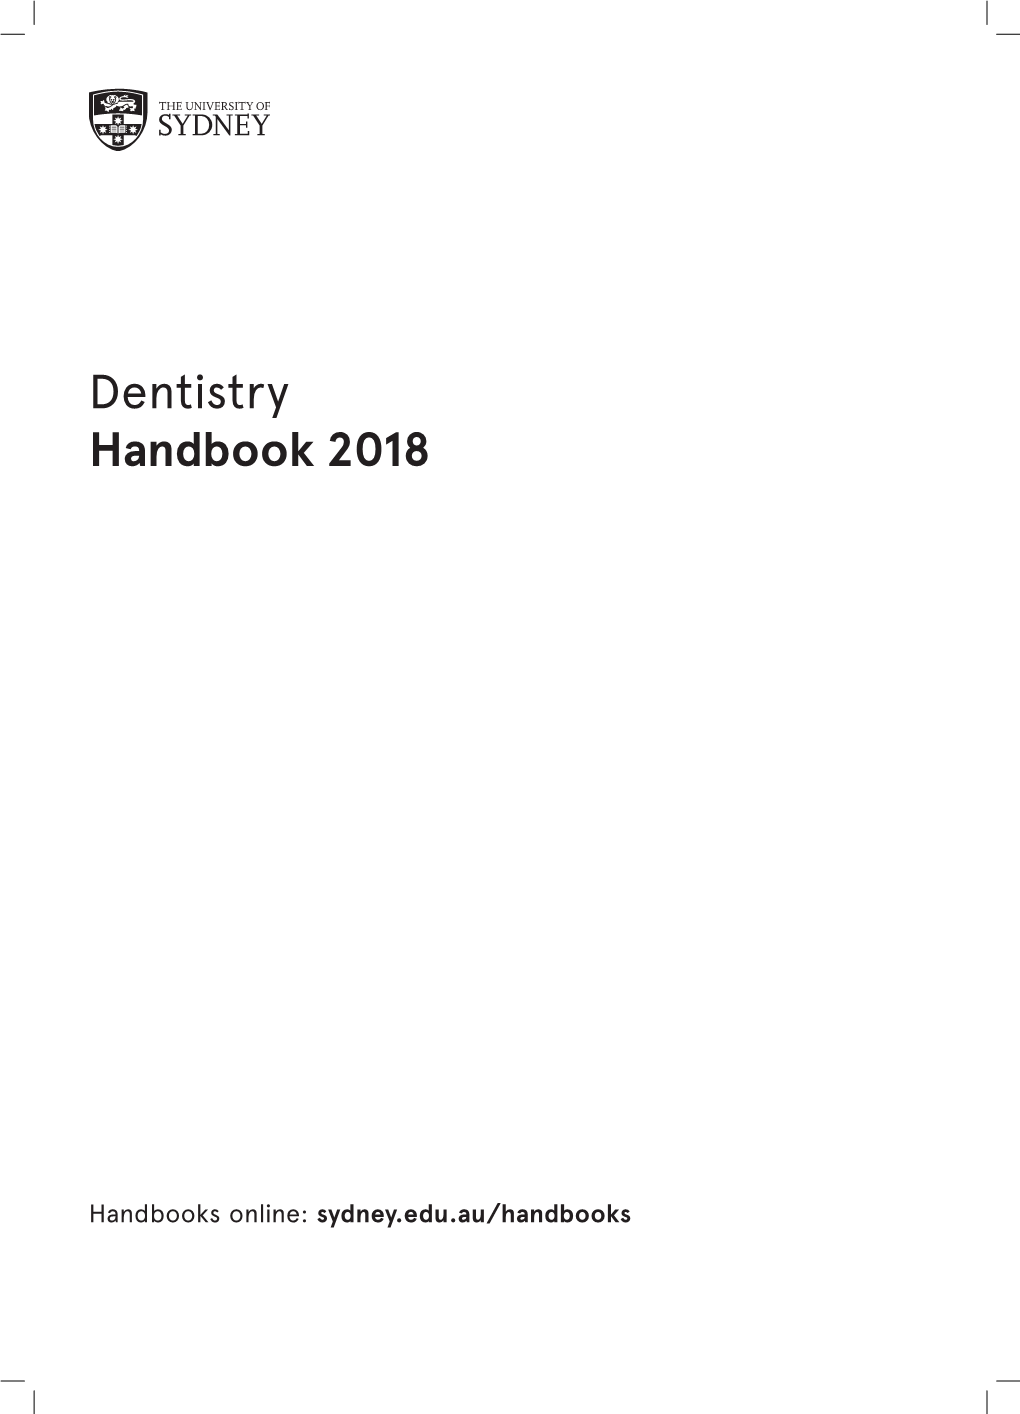 Dentistry Handbook 2018